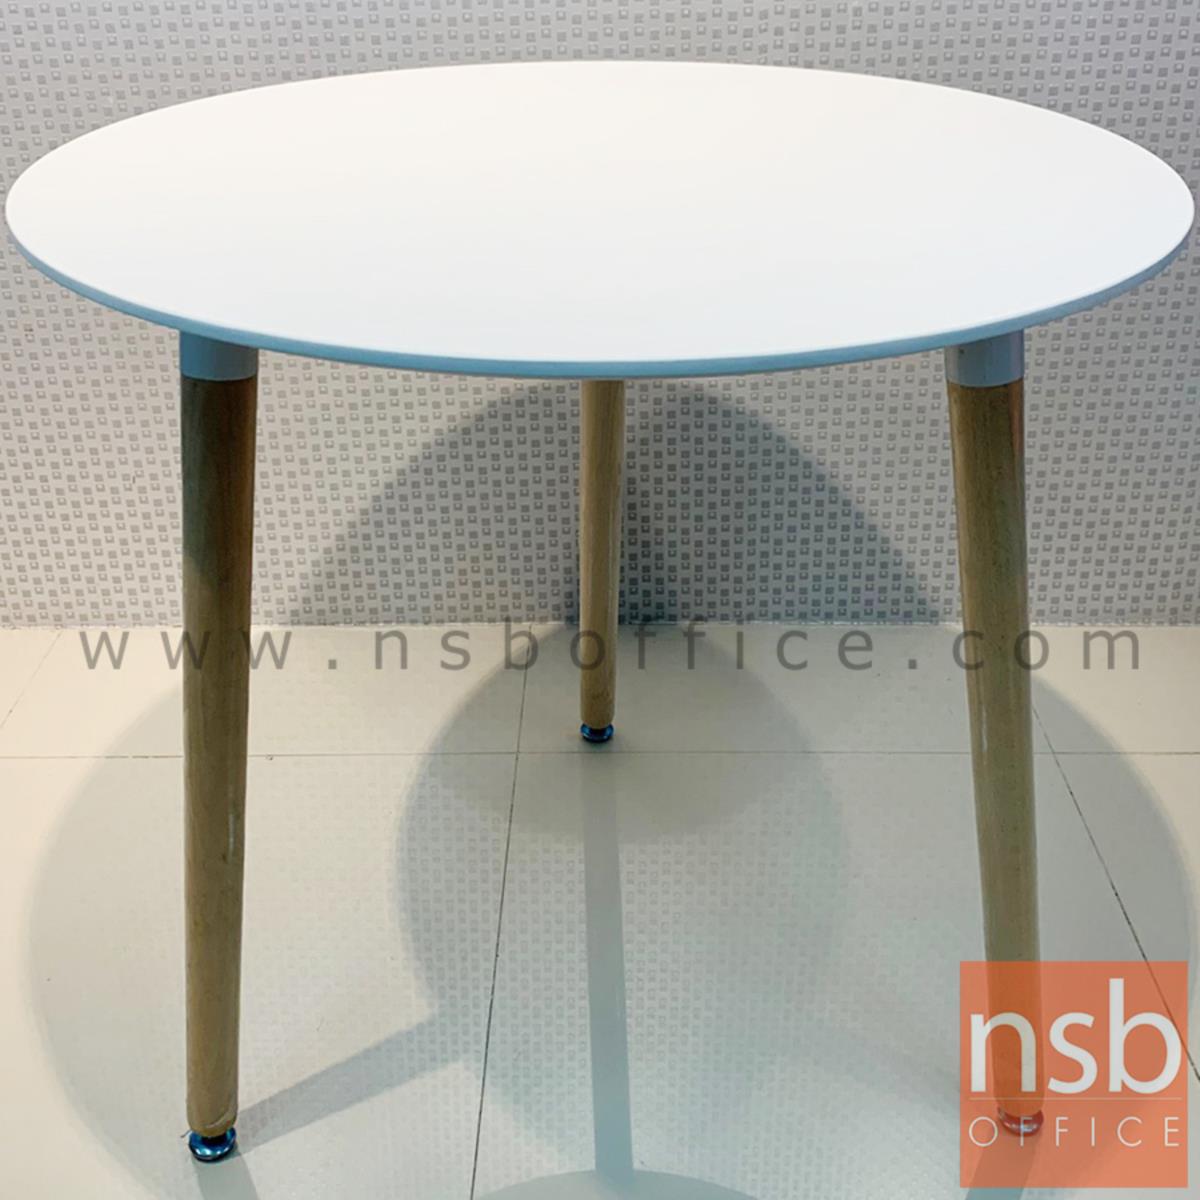 โต๊ะหน้าไม้ MDF รุ่น Shannon (แชนนอน) ขนาด 60W ,80Di cm. ขาไม้สีบีช